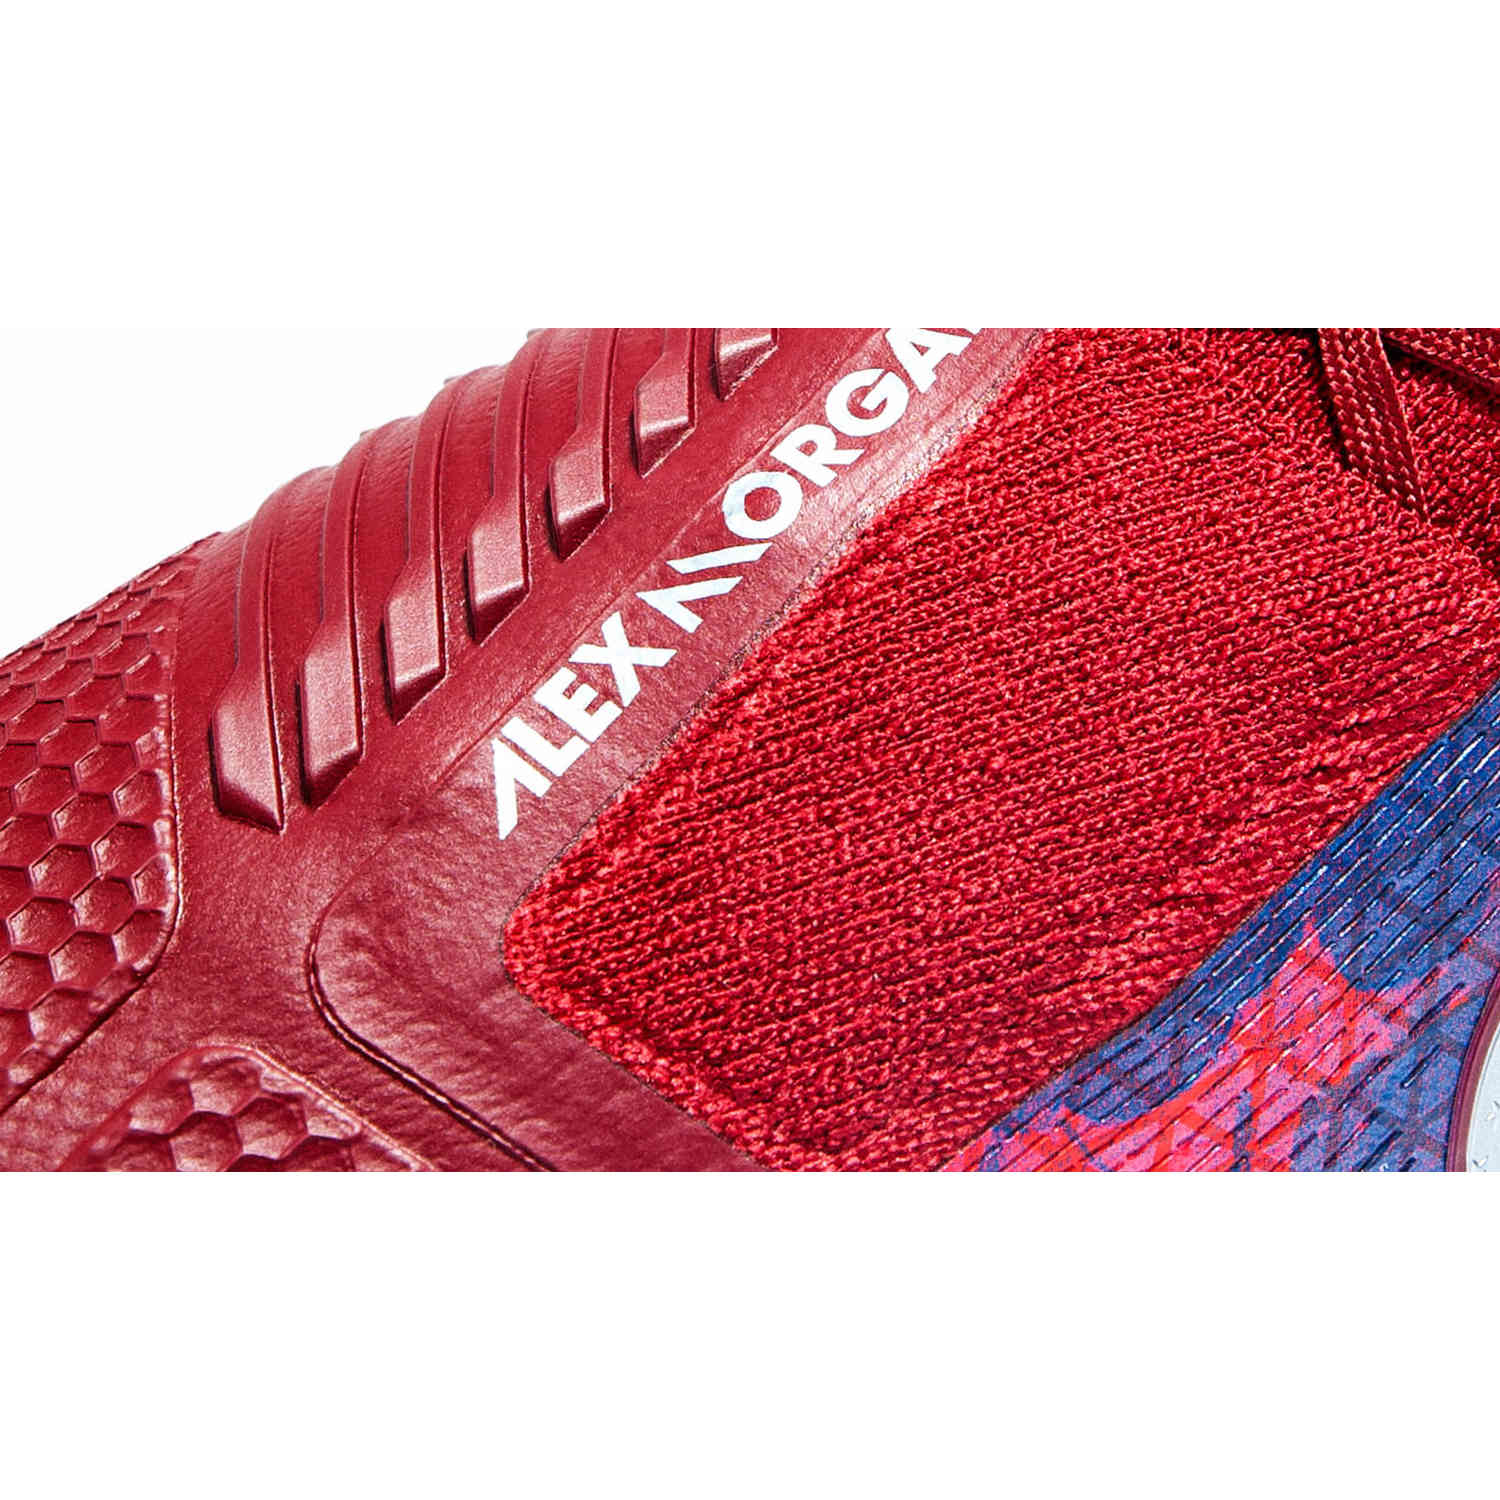 alex morgan shoes 219